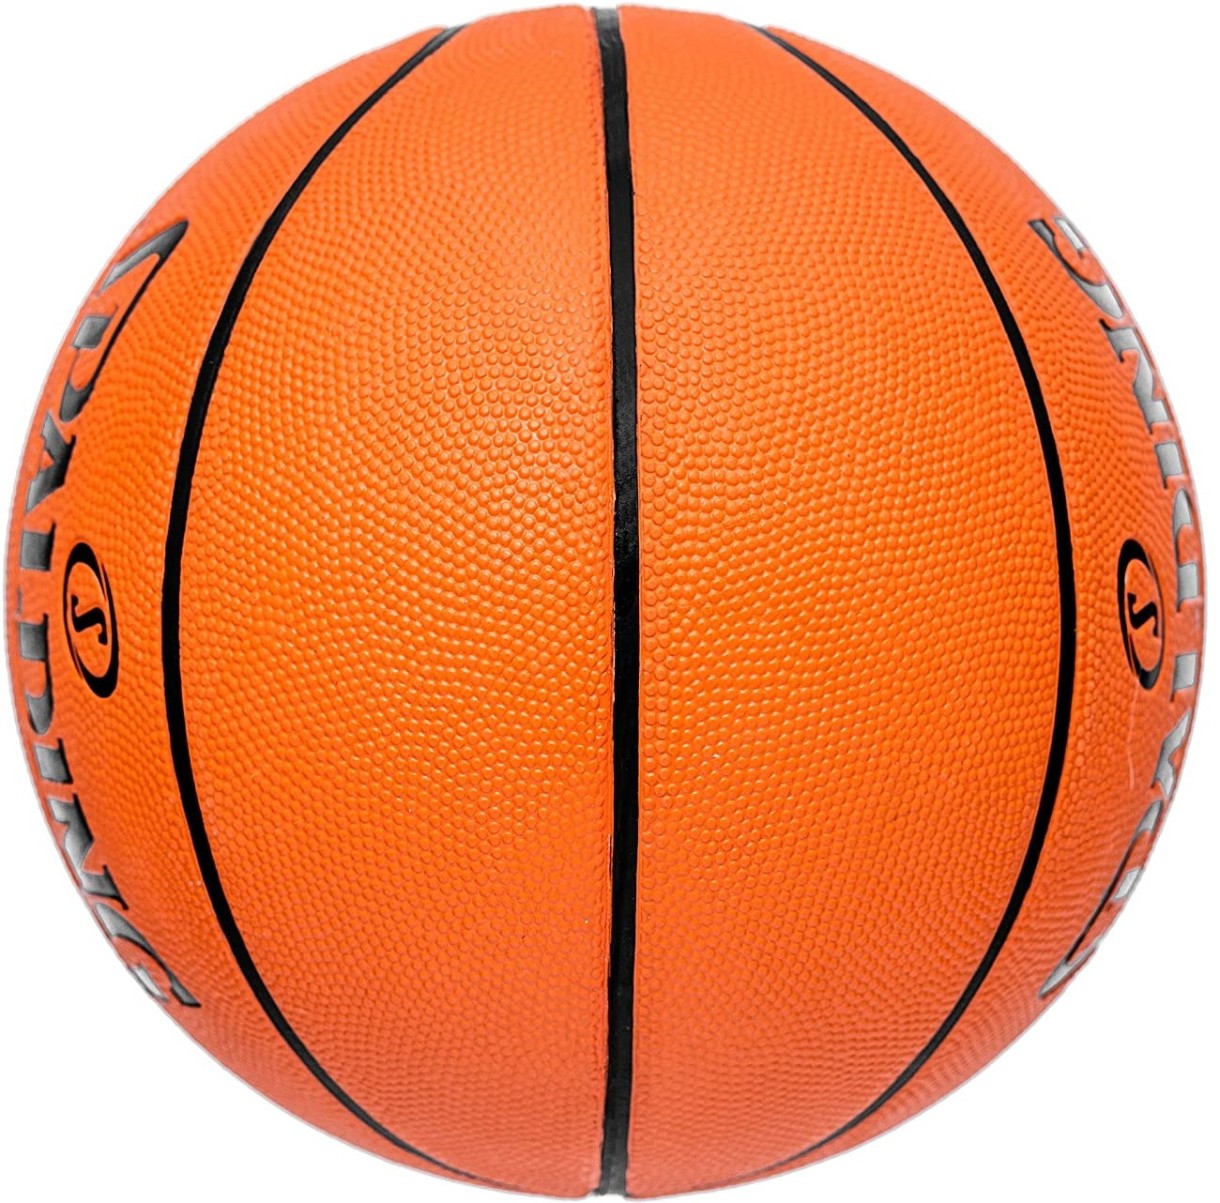 Баскетбольные мячи для детей. TF-150 Varsity мяч баскетбольный Spalding. Мяч Spalding TF-150. Мячи Spalding TF-1000. Мяч Spalding TF-250.